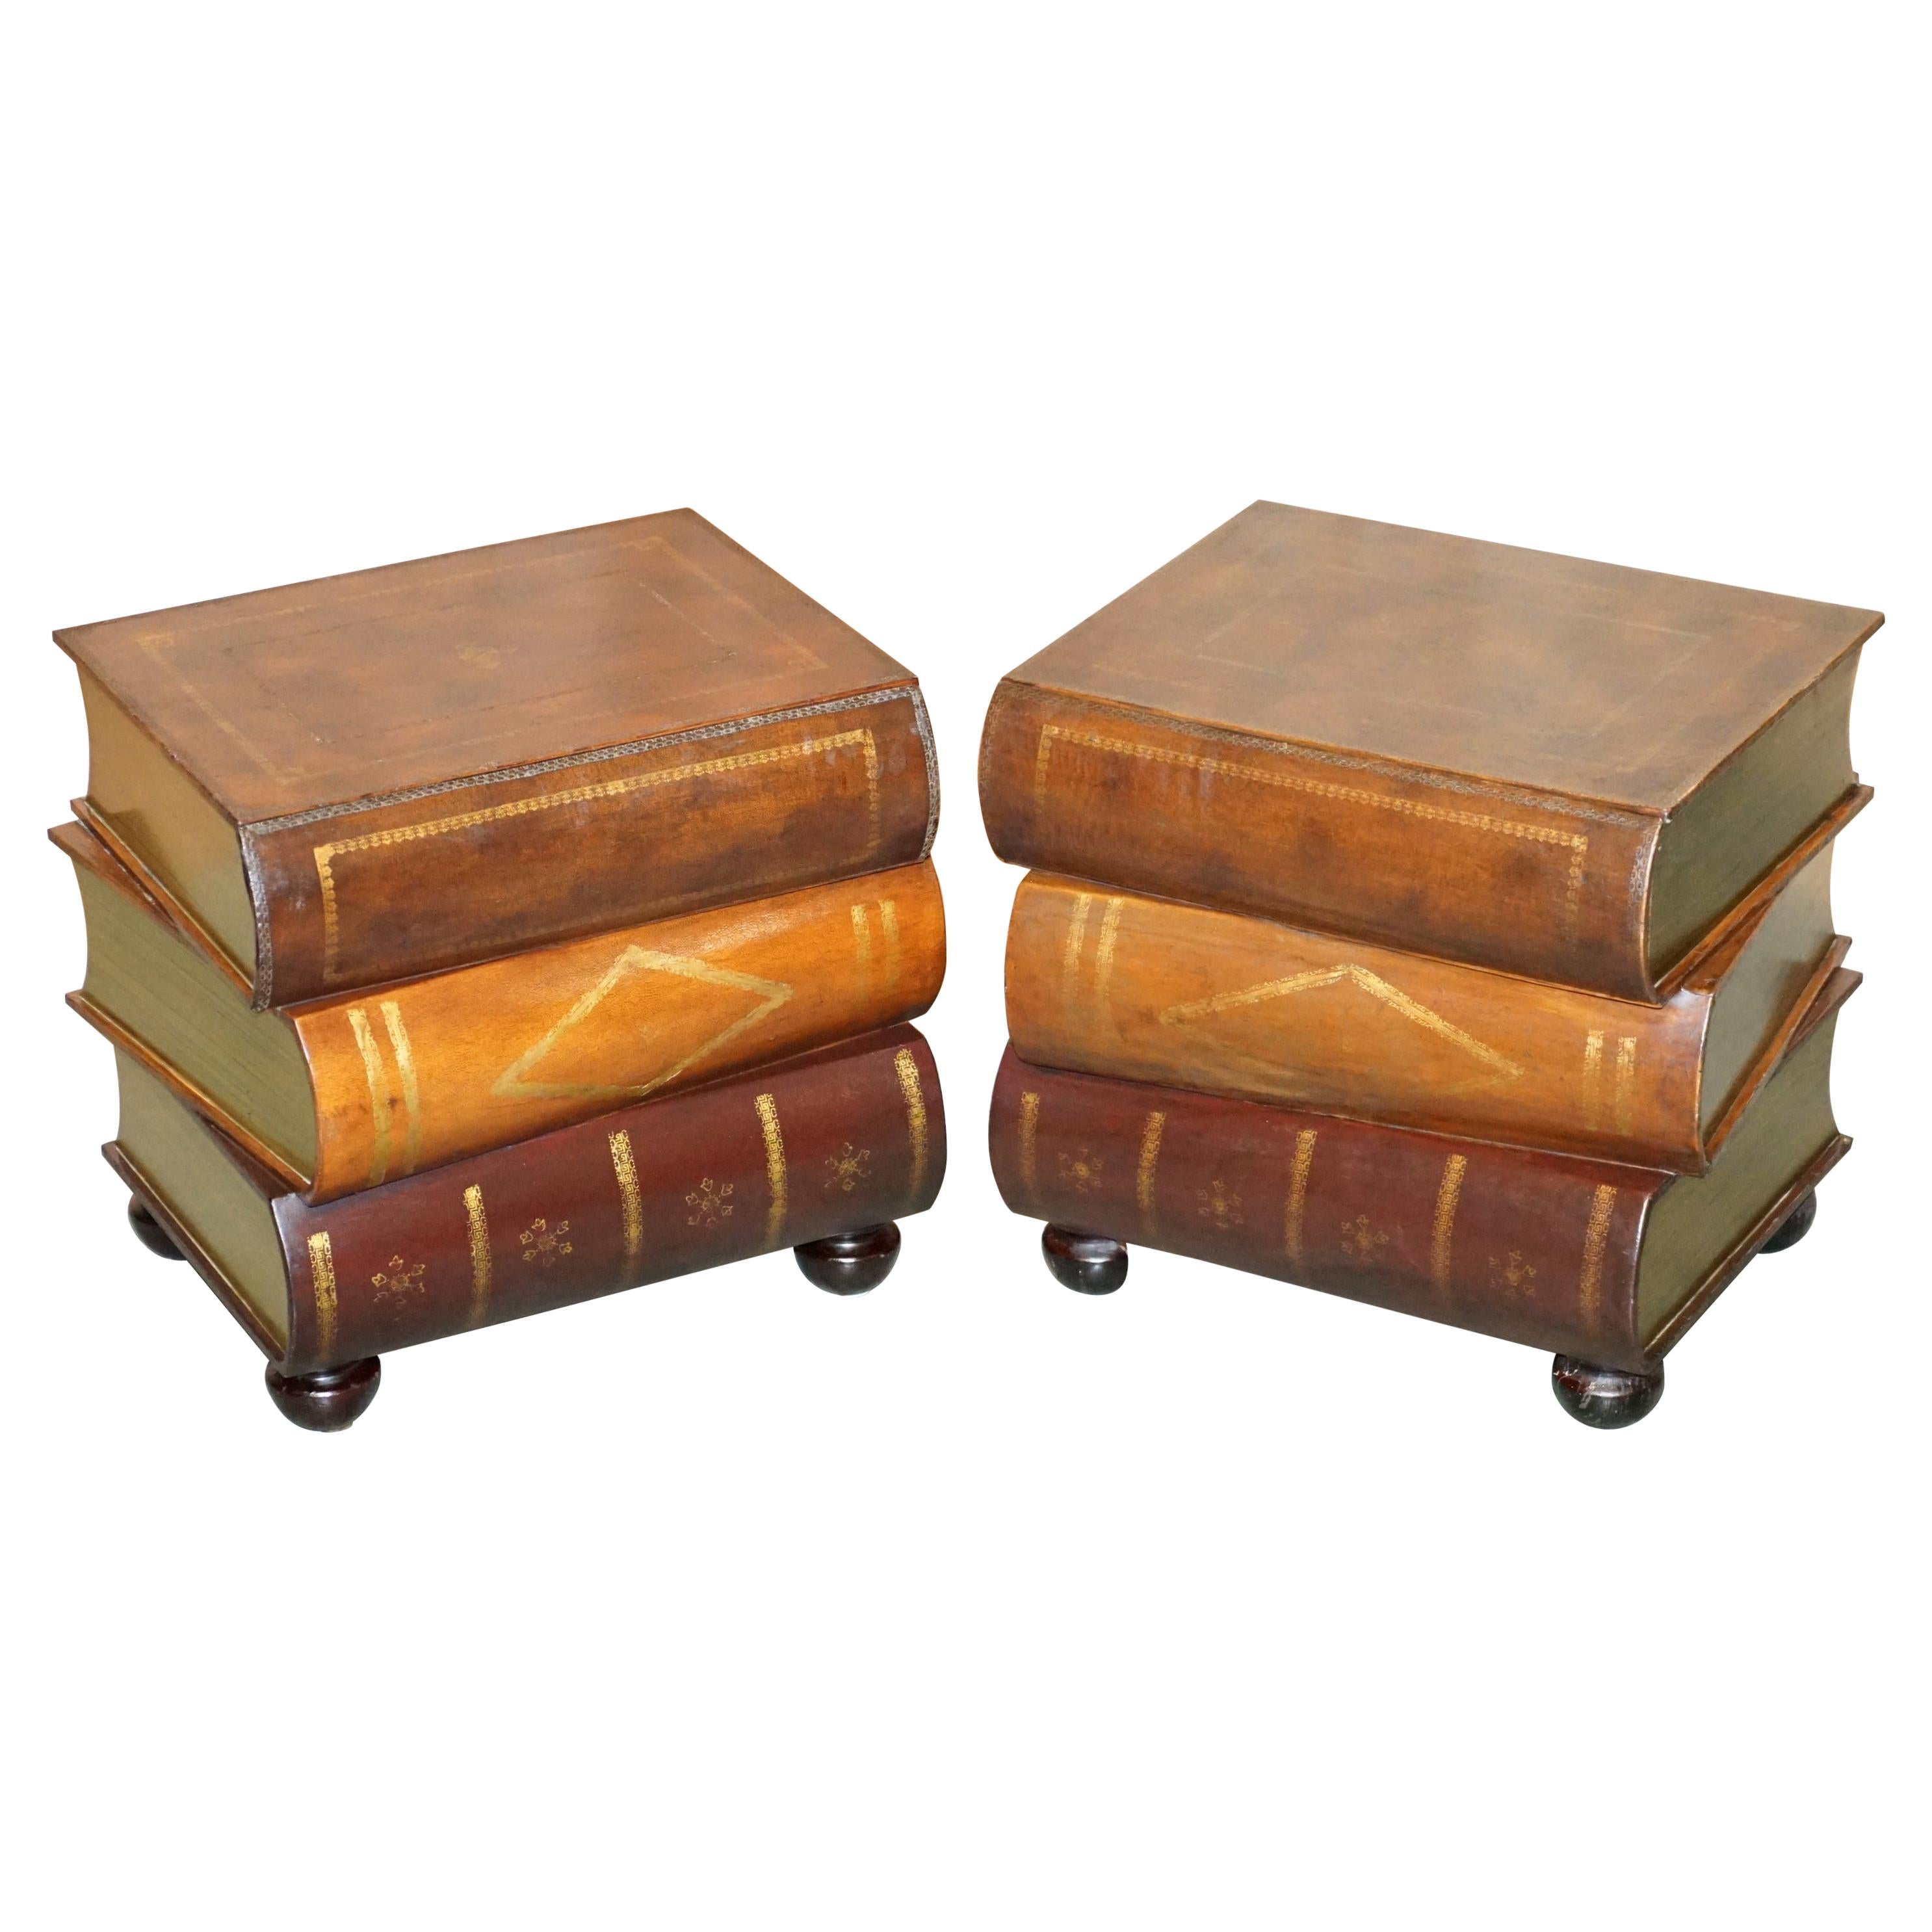 Paar ledergebundene Bibliotheks-Stapelbare Bücher-Beistelltische mit Schubladen aus Leder